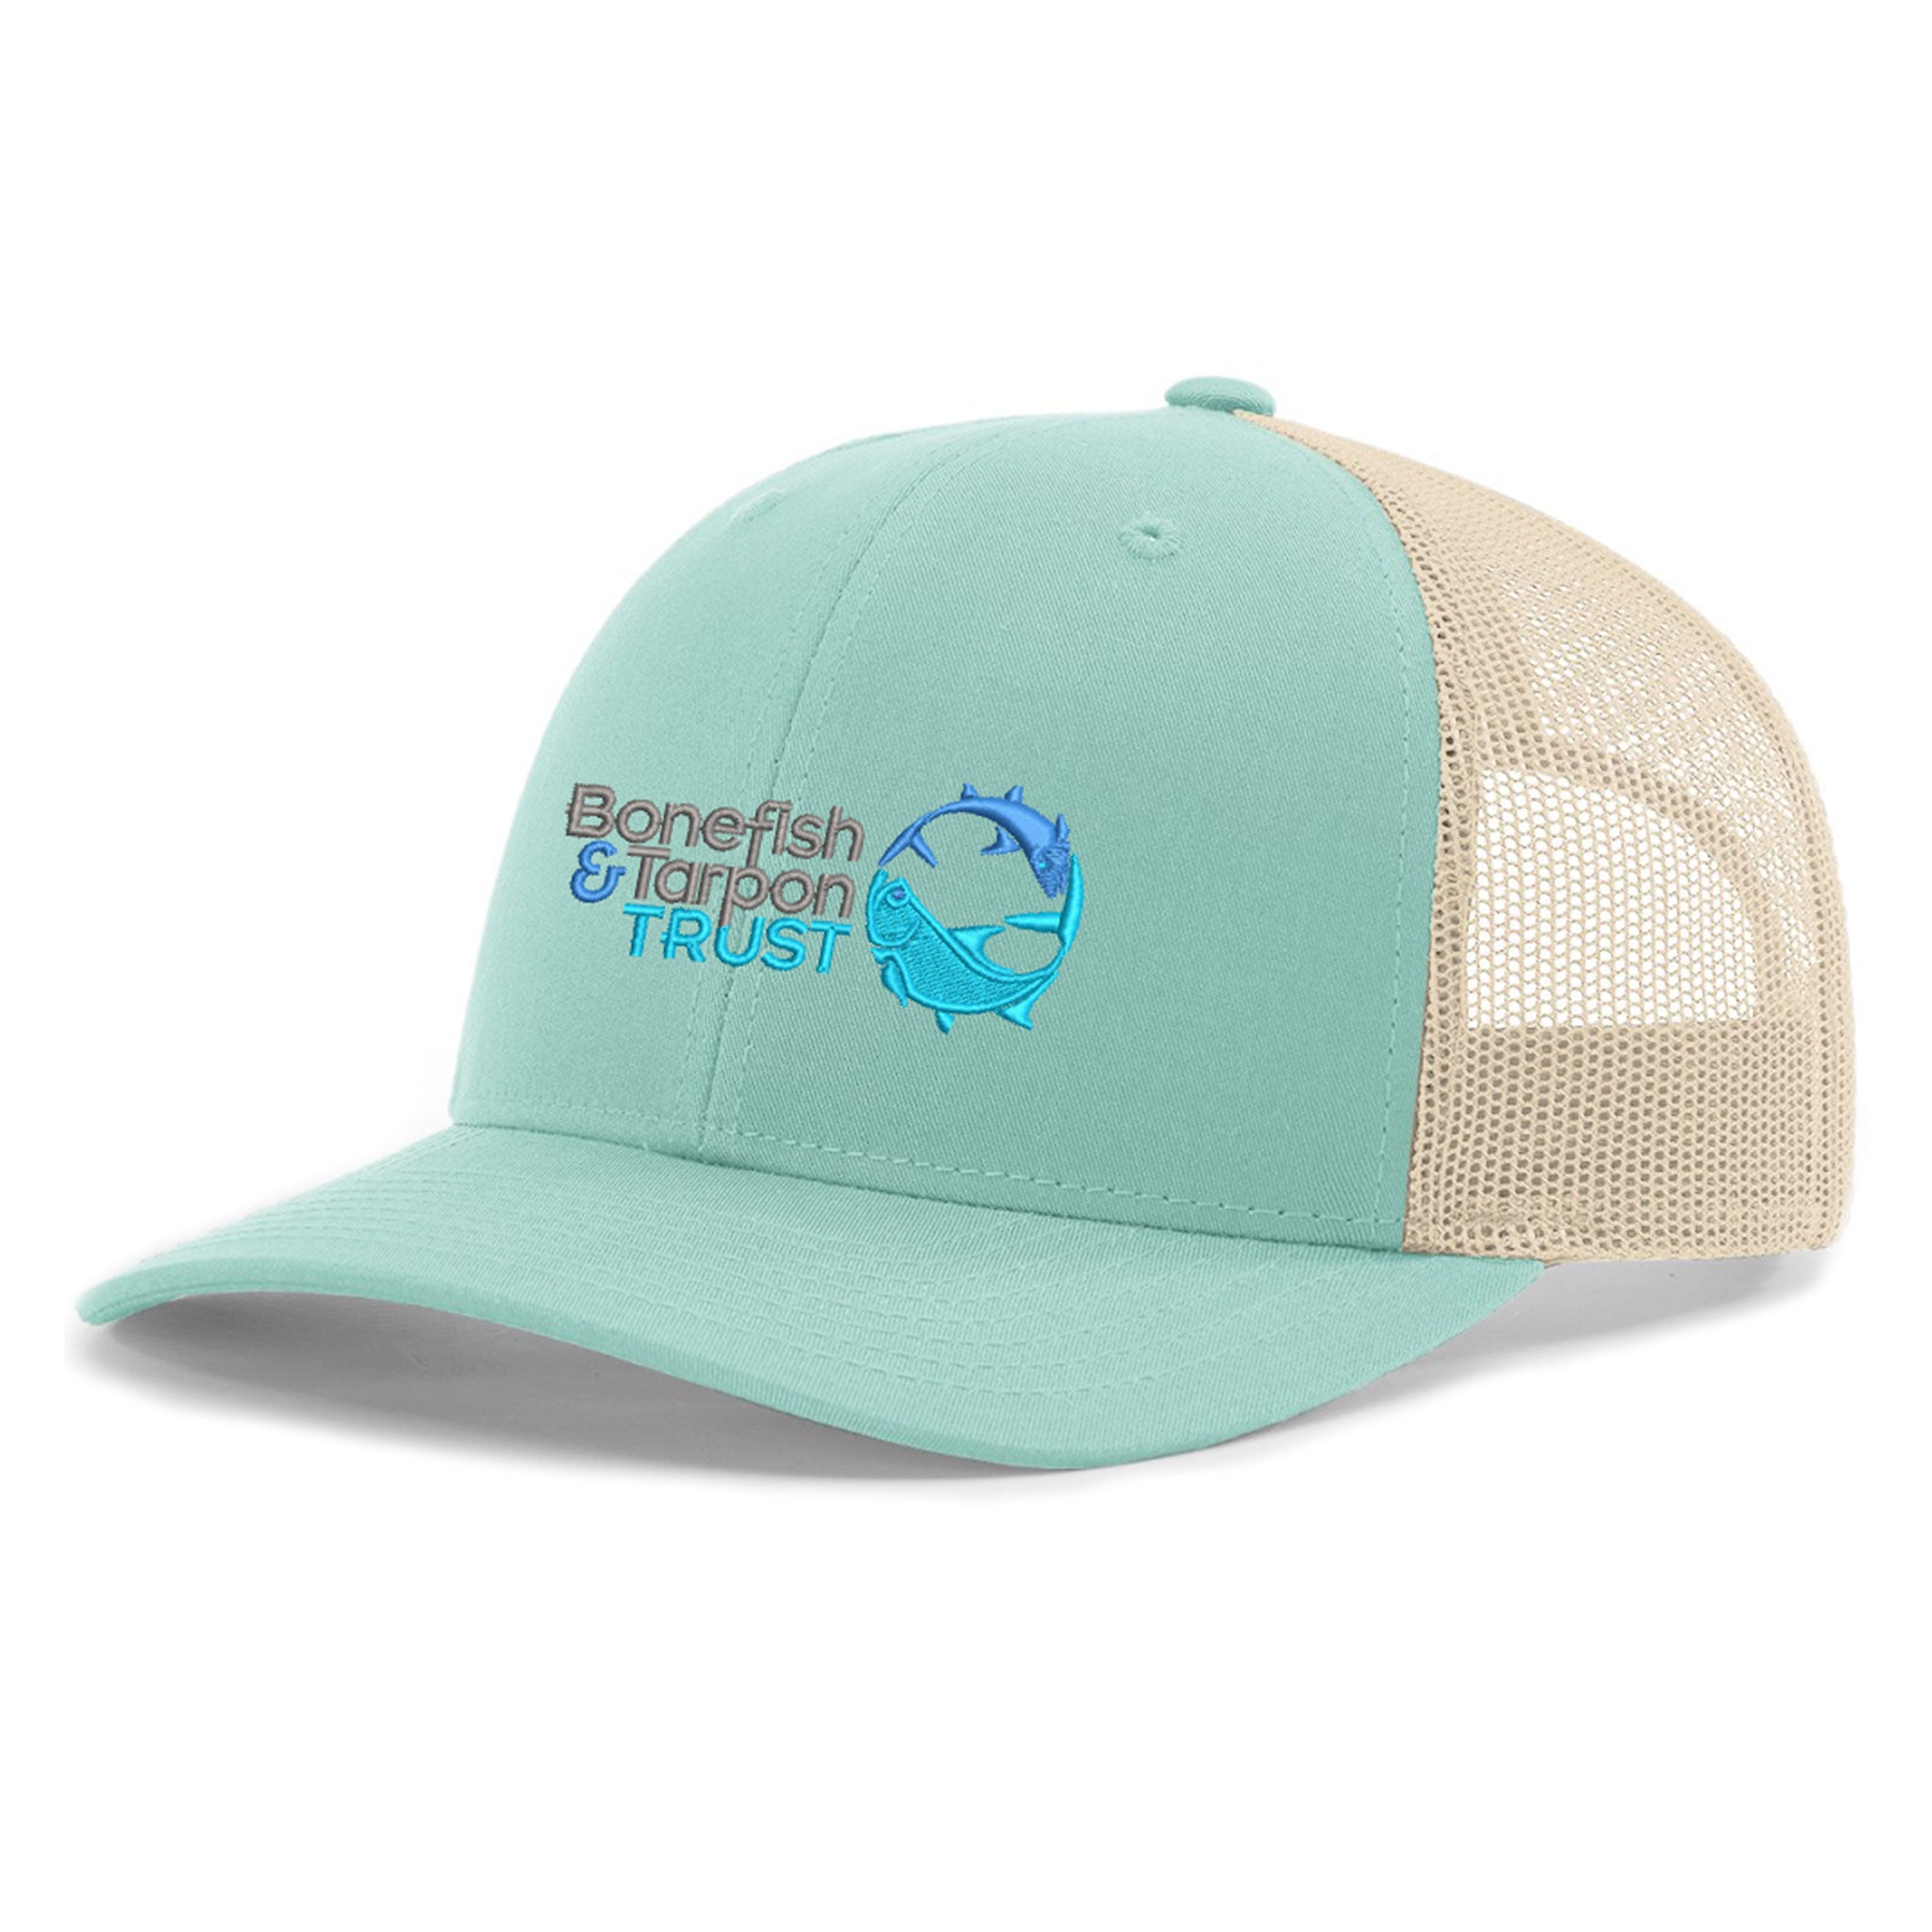 BTT Low Profile Trucker Cap - Aruba/Birch